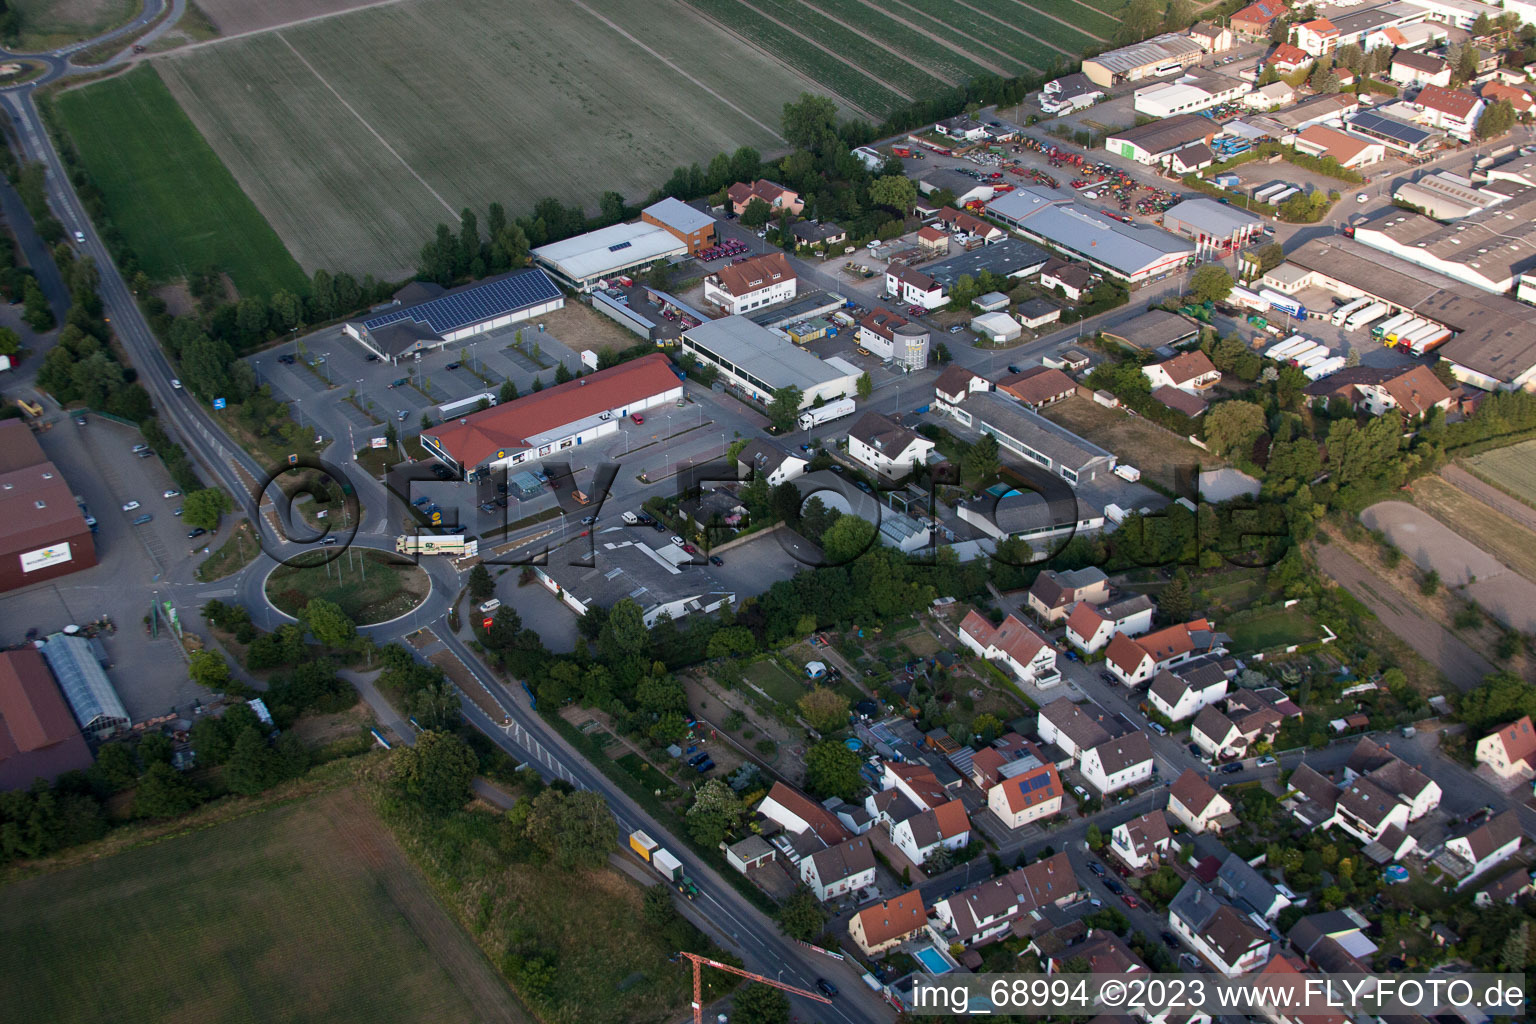 Aerial view of Aldi Lidl in the district Dannstadt in Dannstadt-Schauernheim in the state Rhineland-Palatinate, Germany